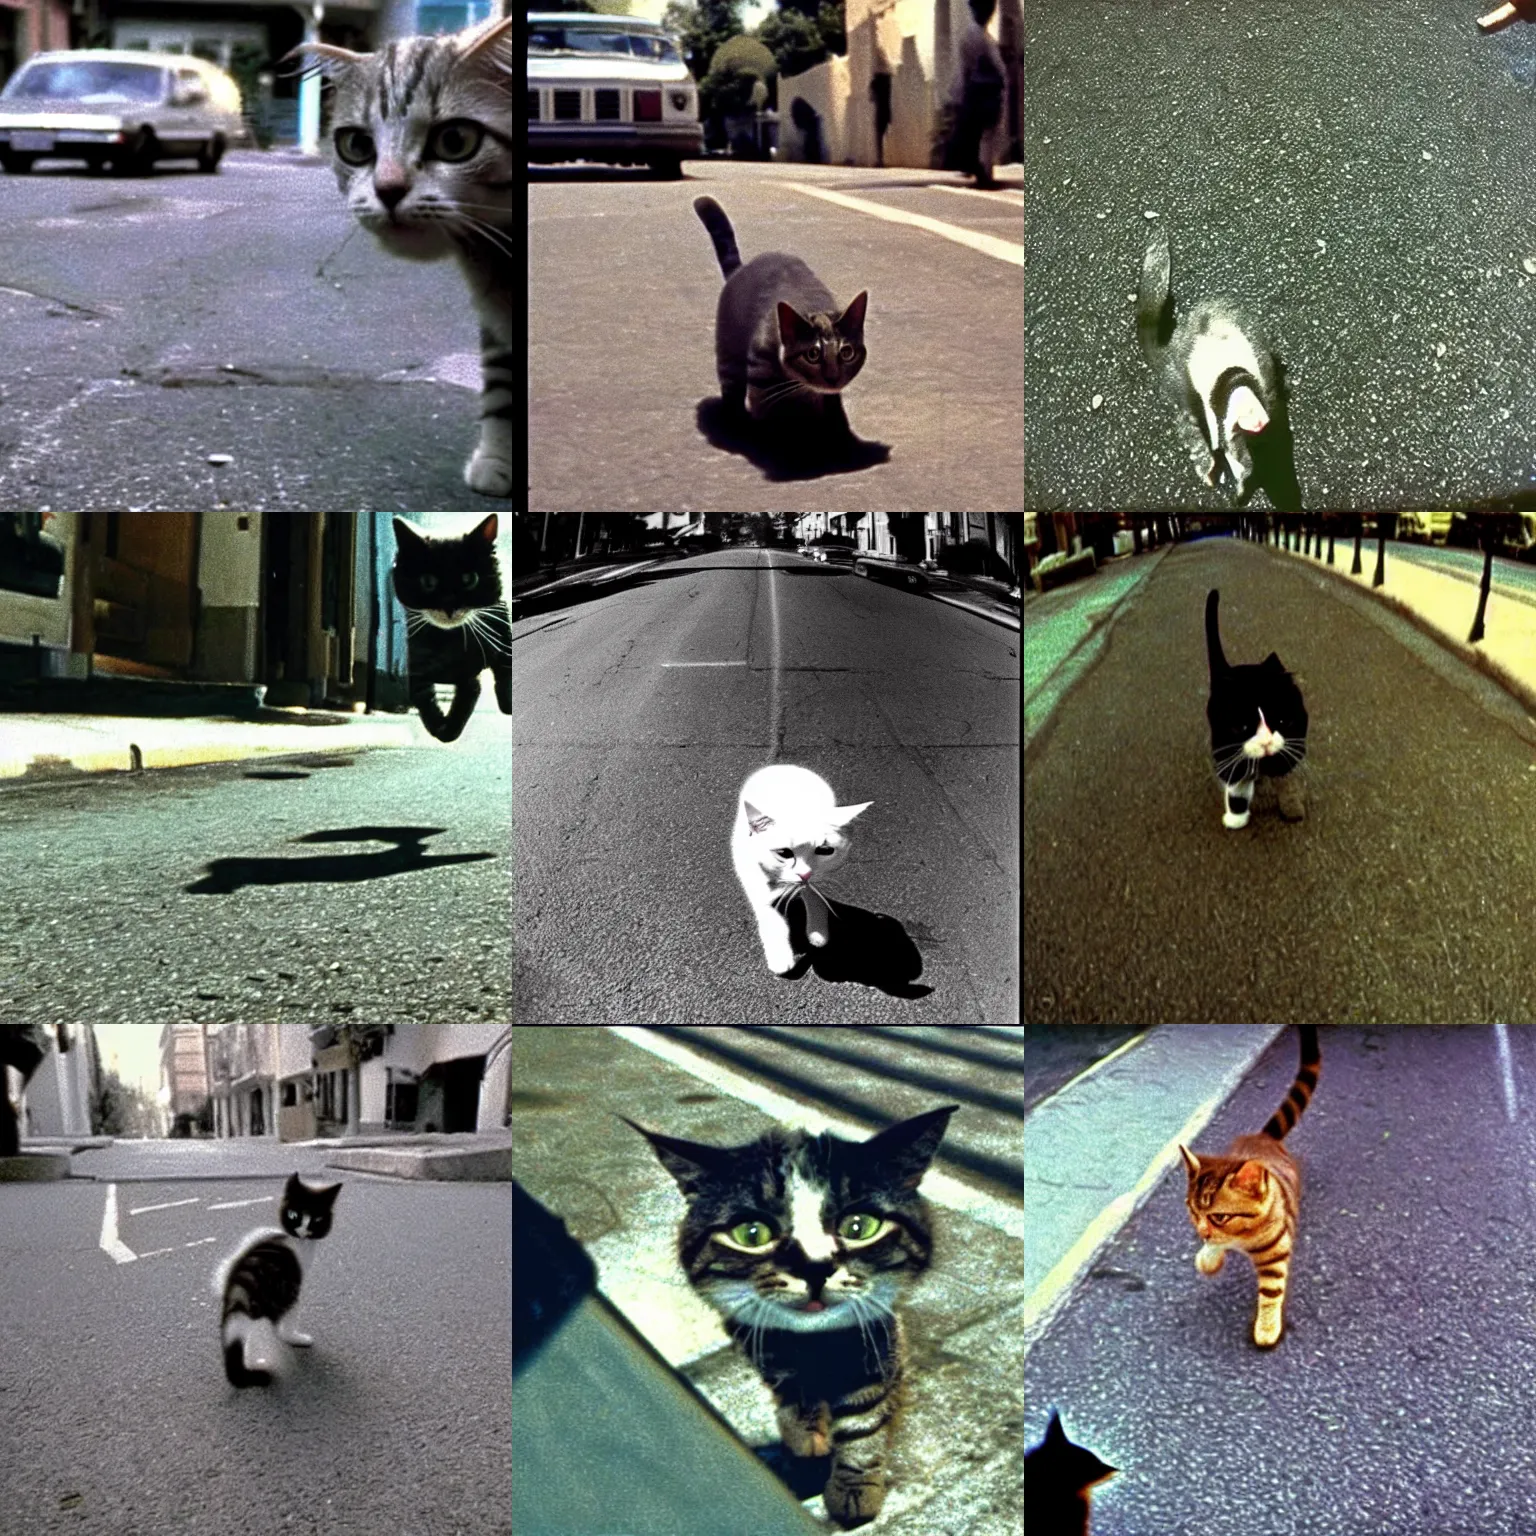 Prompt: gopro pov of a cat walking in the street, alien ( 1 9 8 5 )